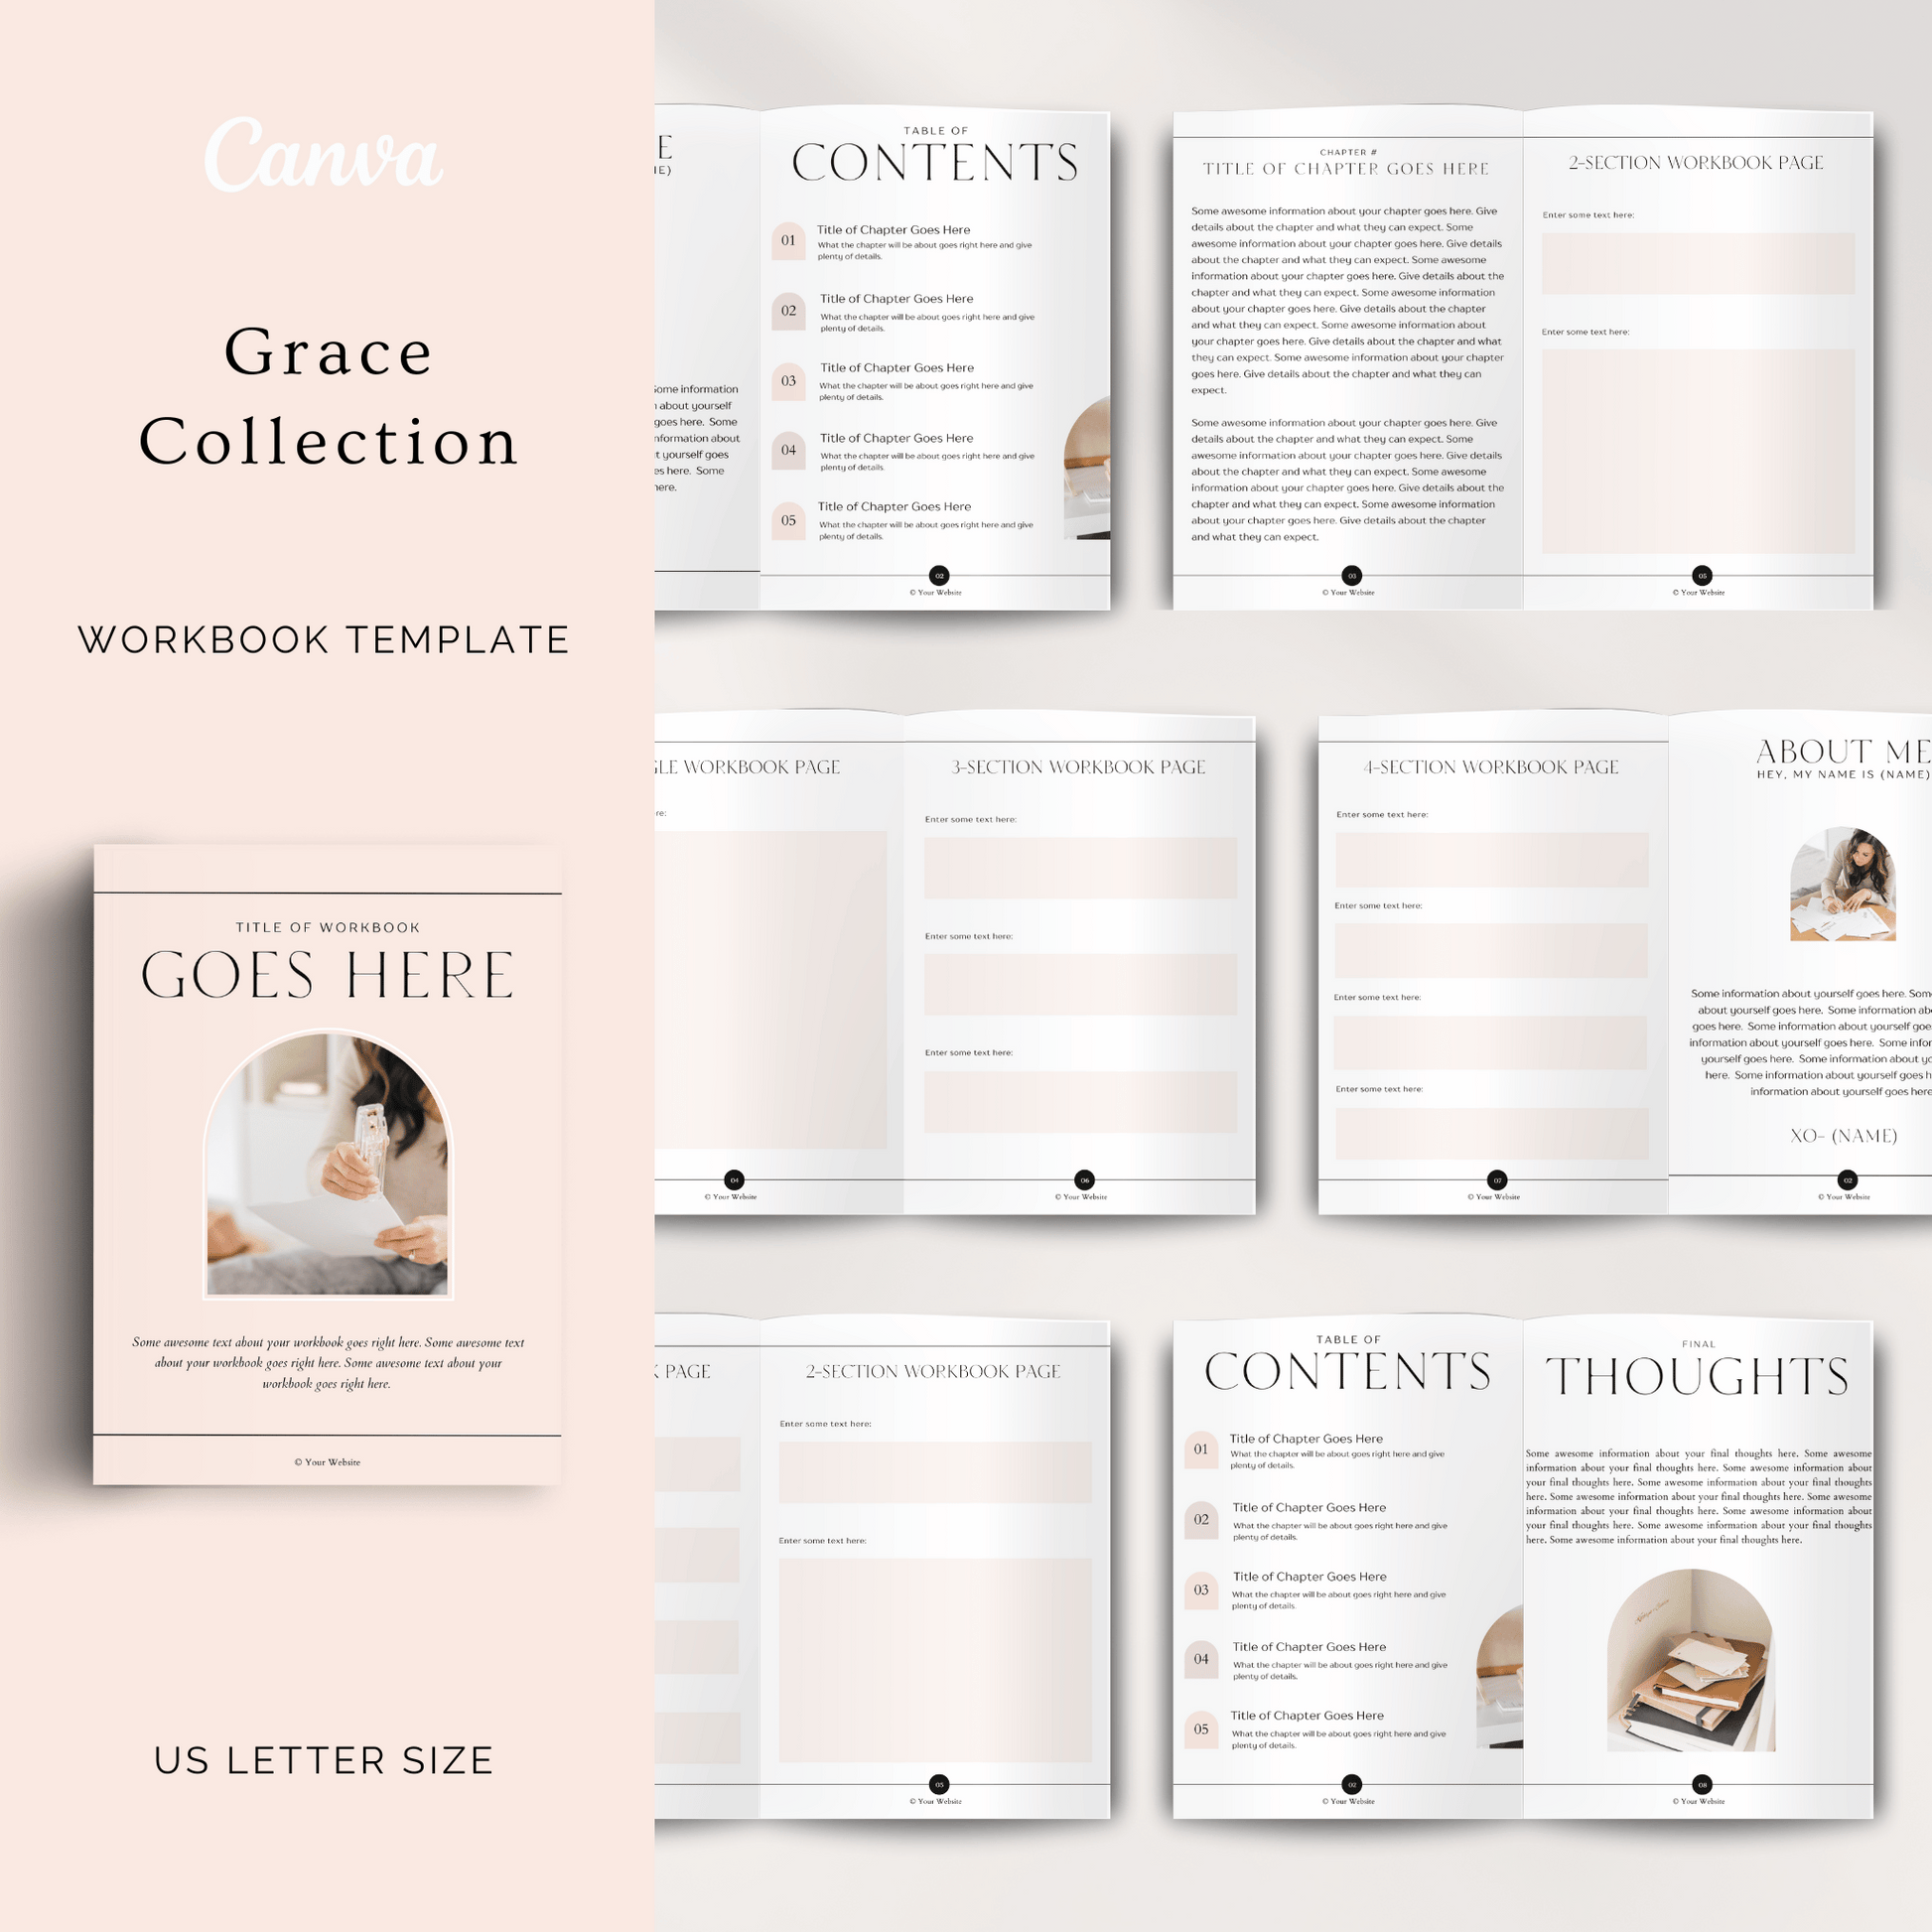 Canva feminine workbook template for female entrepreneurs. 